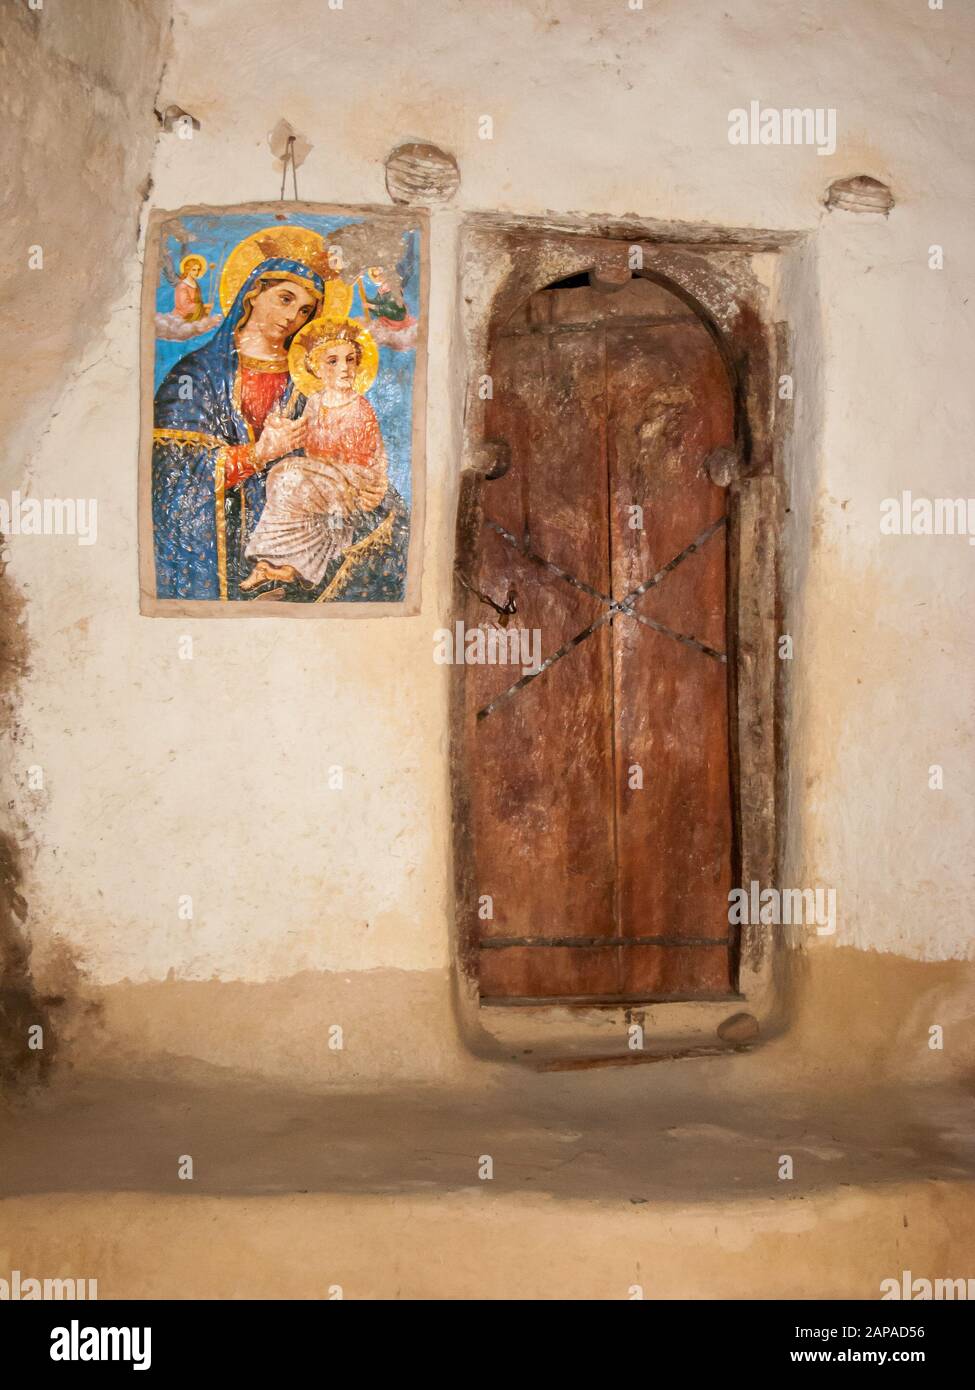 Dipinto a muro della Vergine Maria con Gesù alla porta nella chiesa scavata nella roccia di Medhane Alem Adi Kasho, Teka Tesfai, Tigray, Etiopia Foto Stock